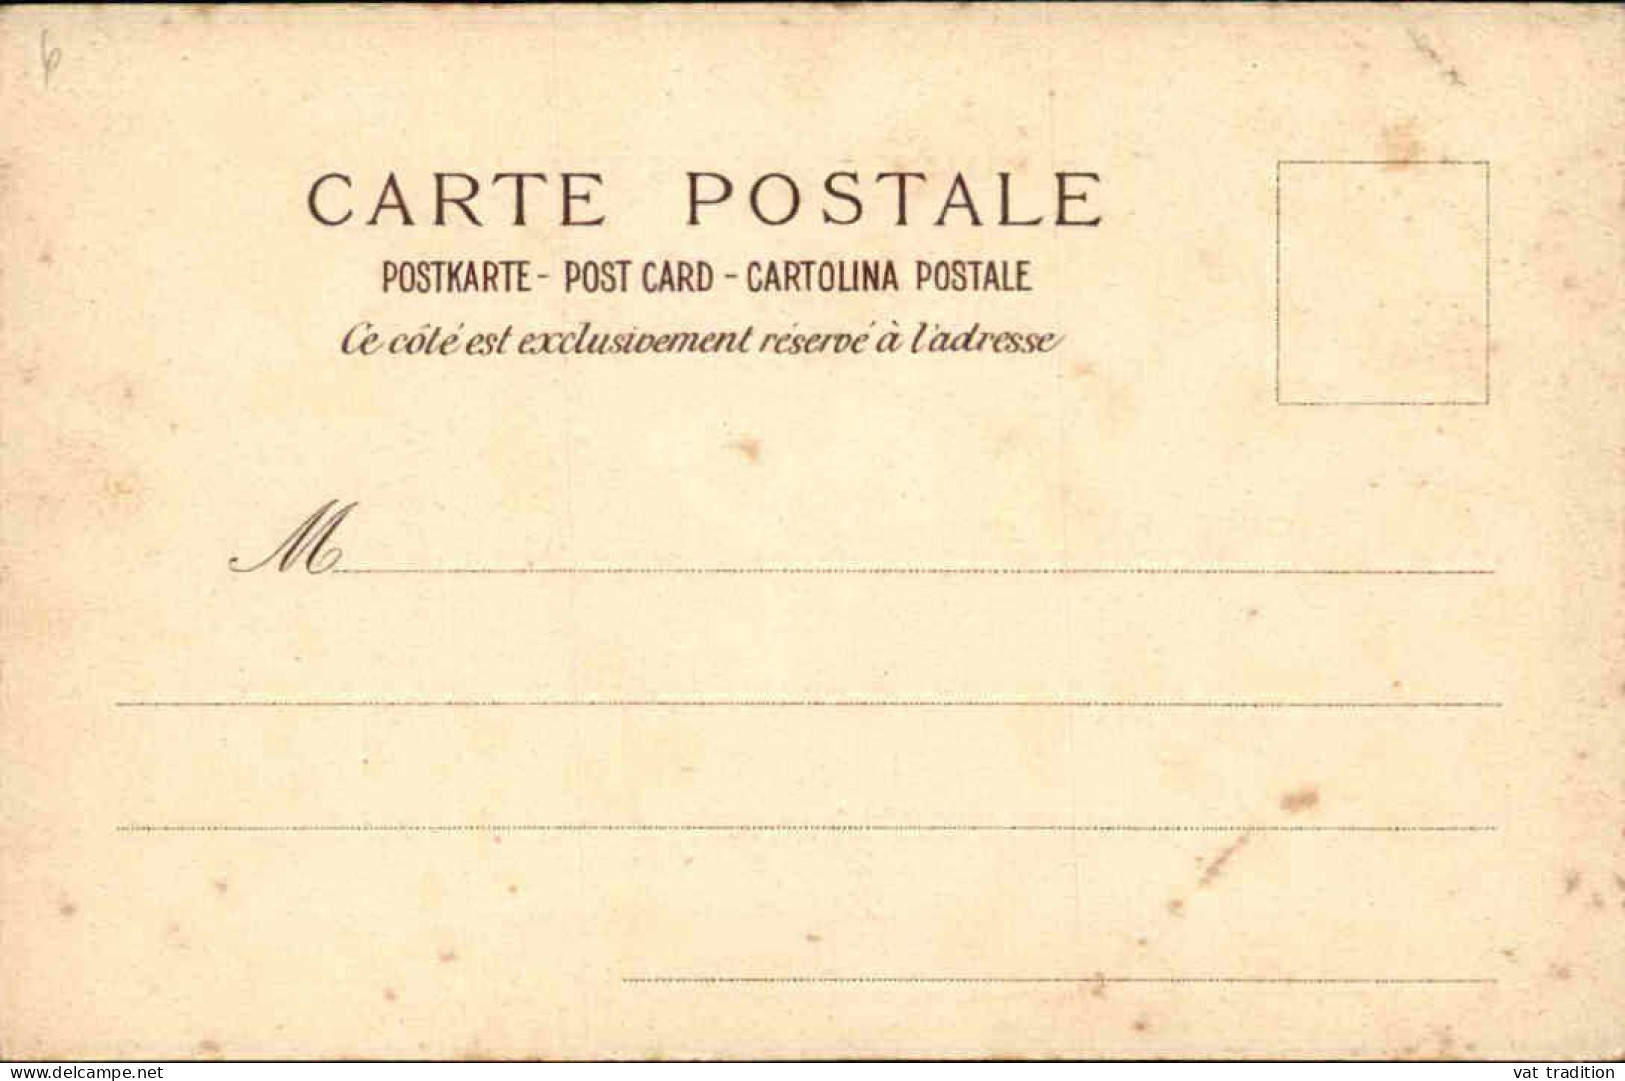 POLITIQUE - Carte Postale - Rome 24/28 Avril 1904 - L 152213 - Ereignisse